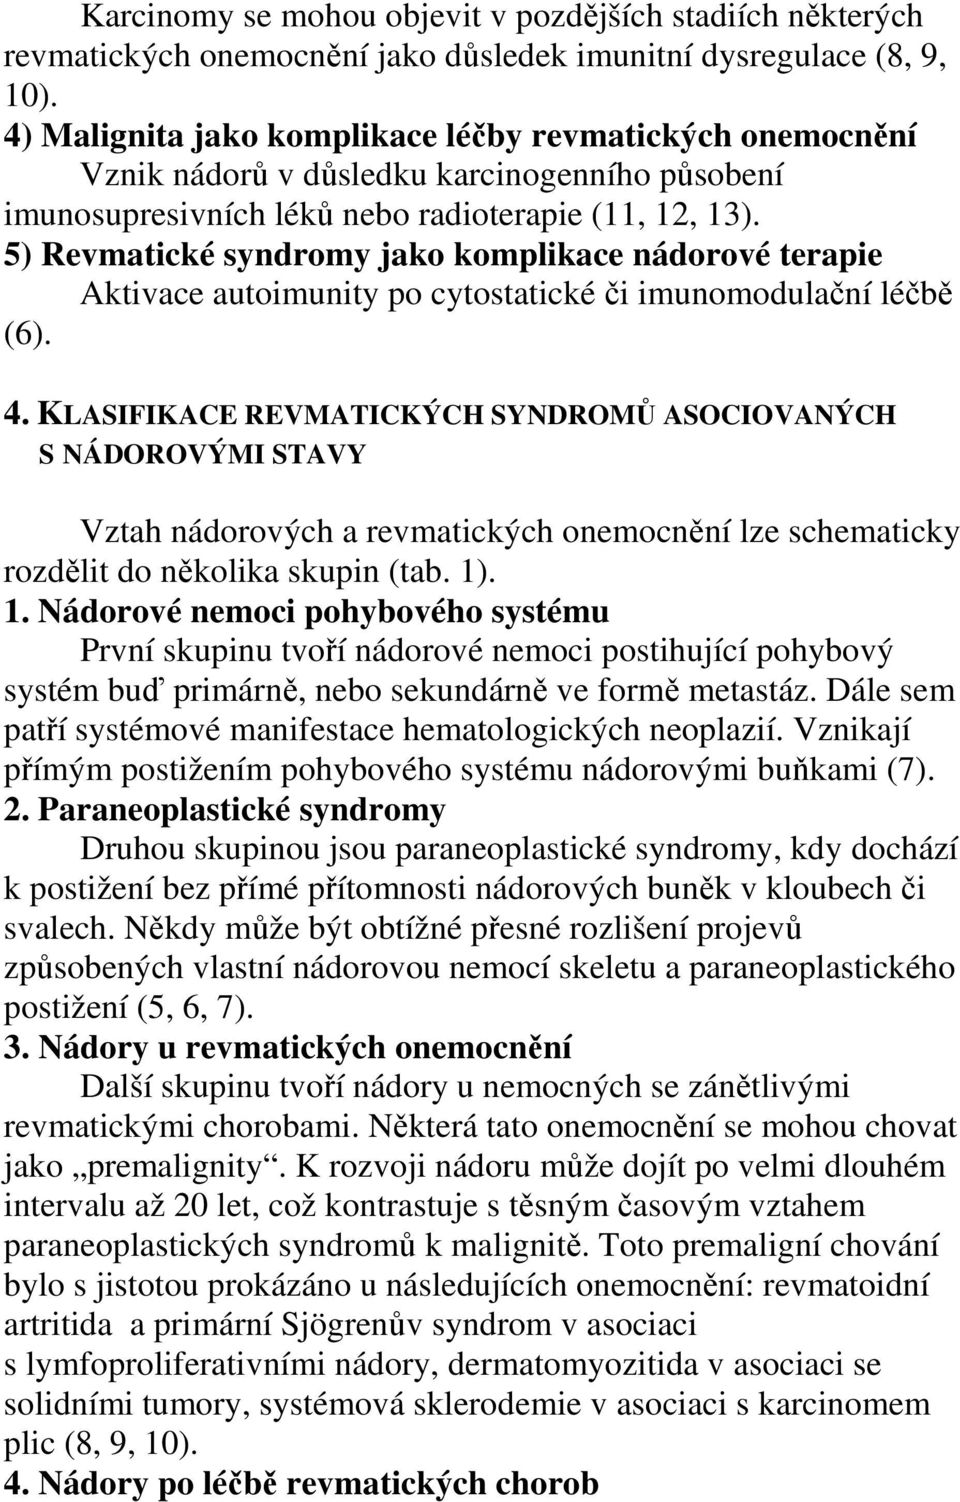 5) Revmatické syndromy jako komplikace nádorové terapie Aktivace autoimunity po cytostatické či imunomodulační léčbě (6). 4.